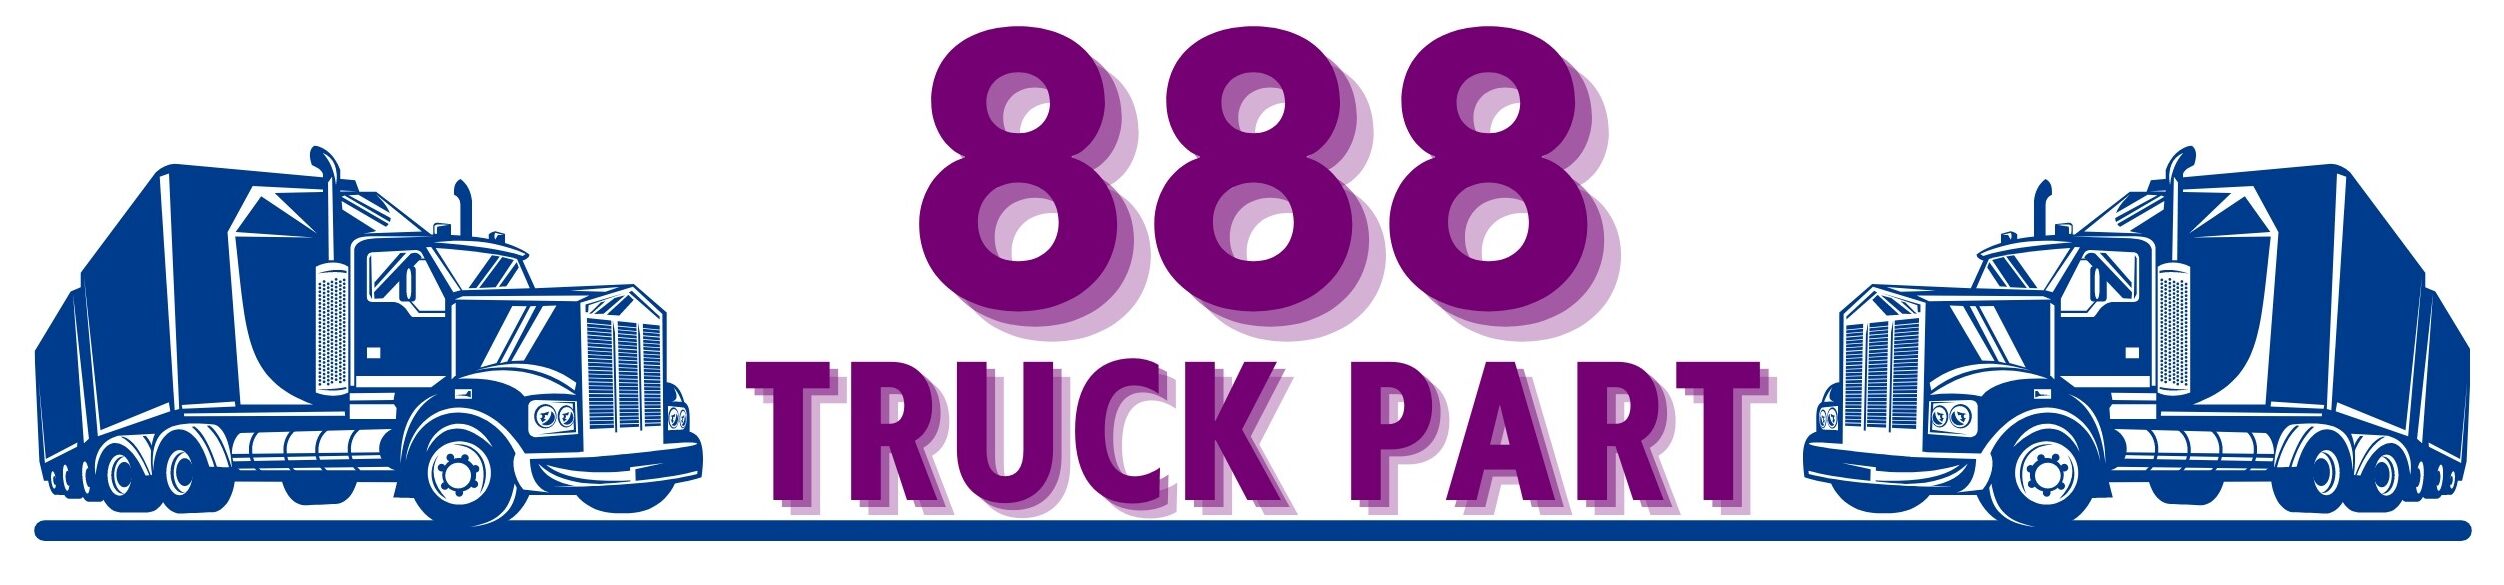 888 Truck Part